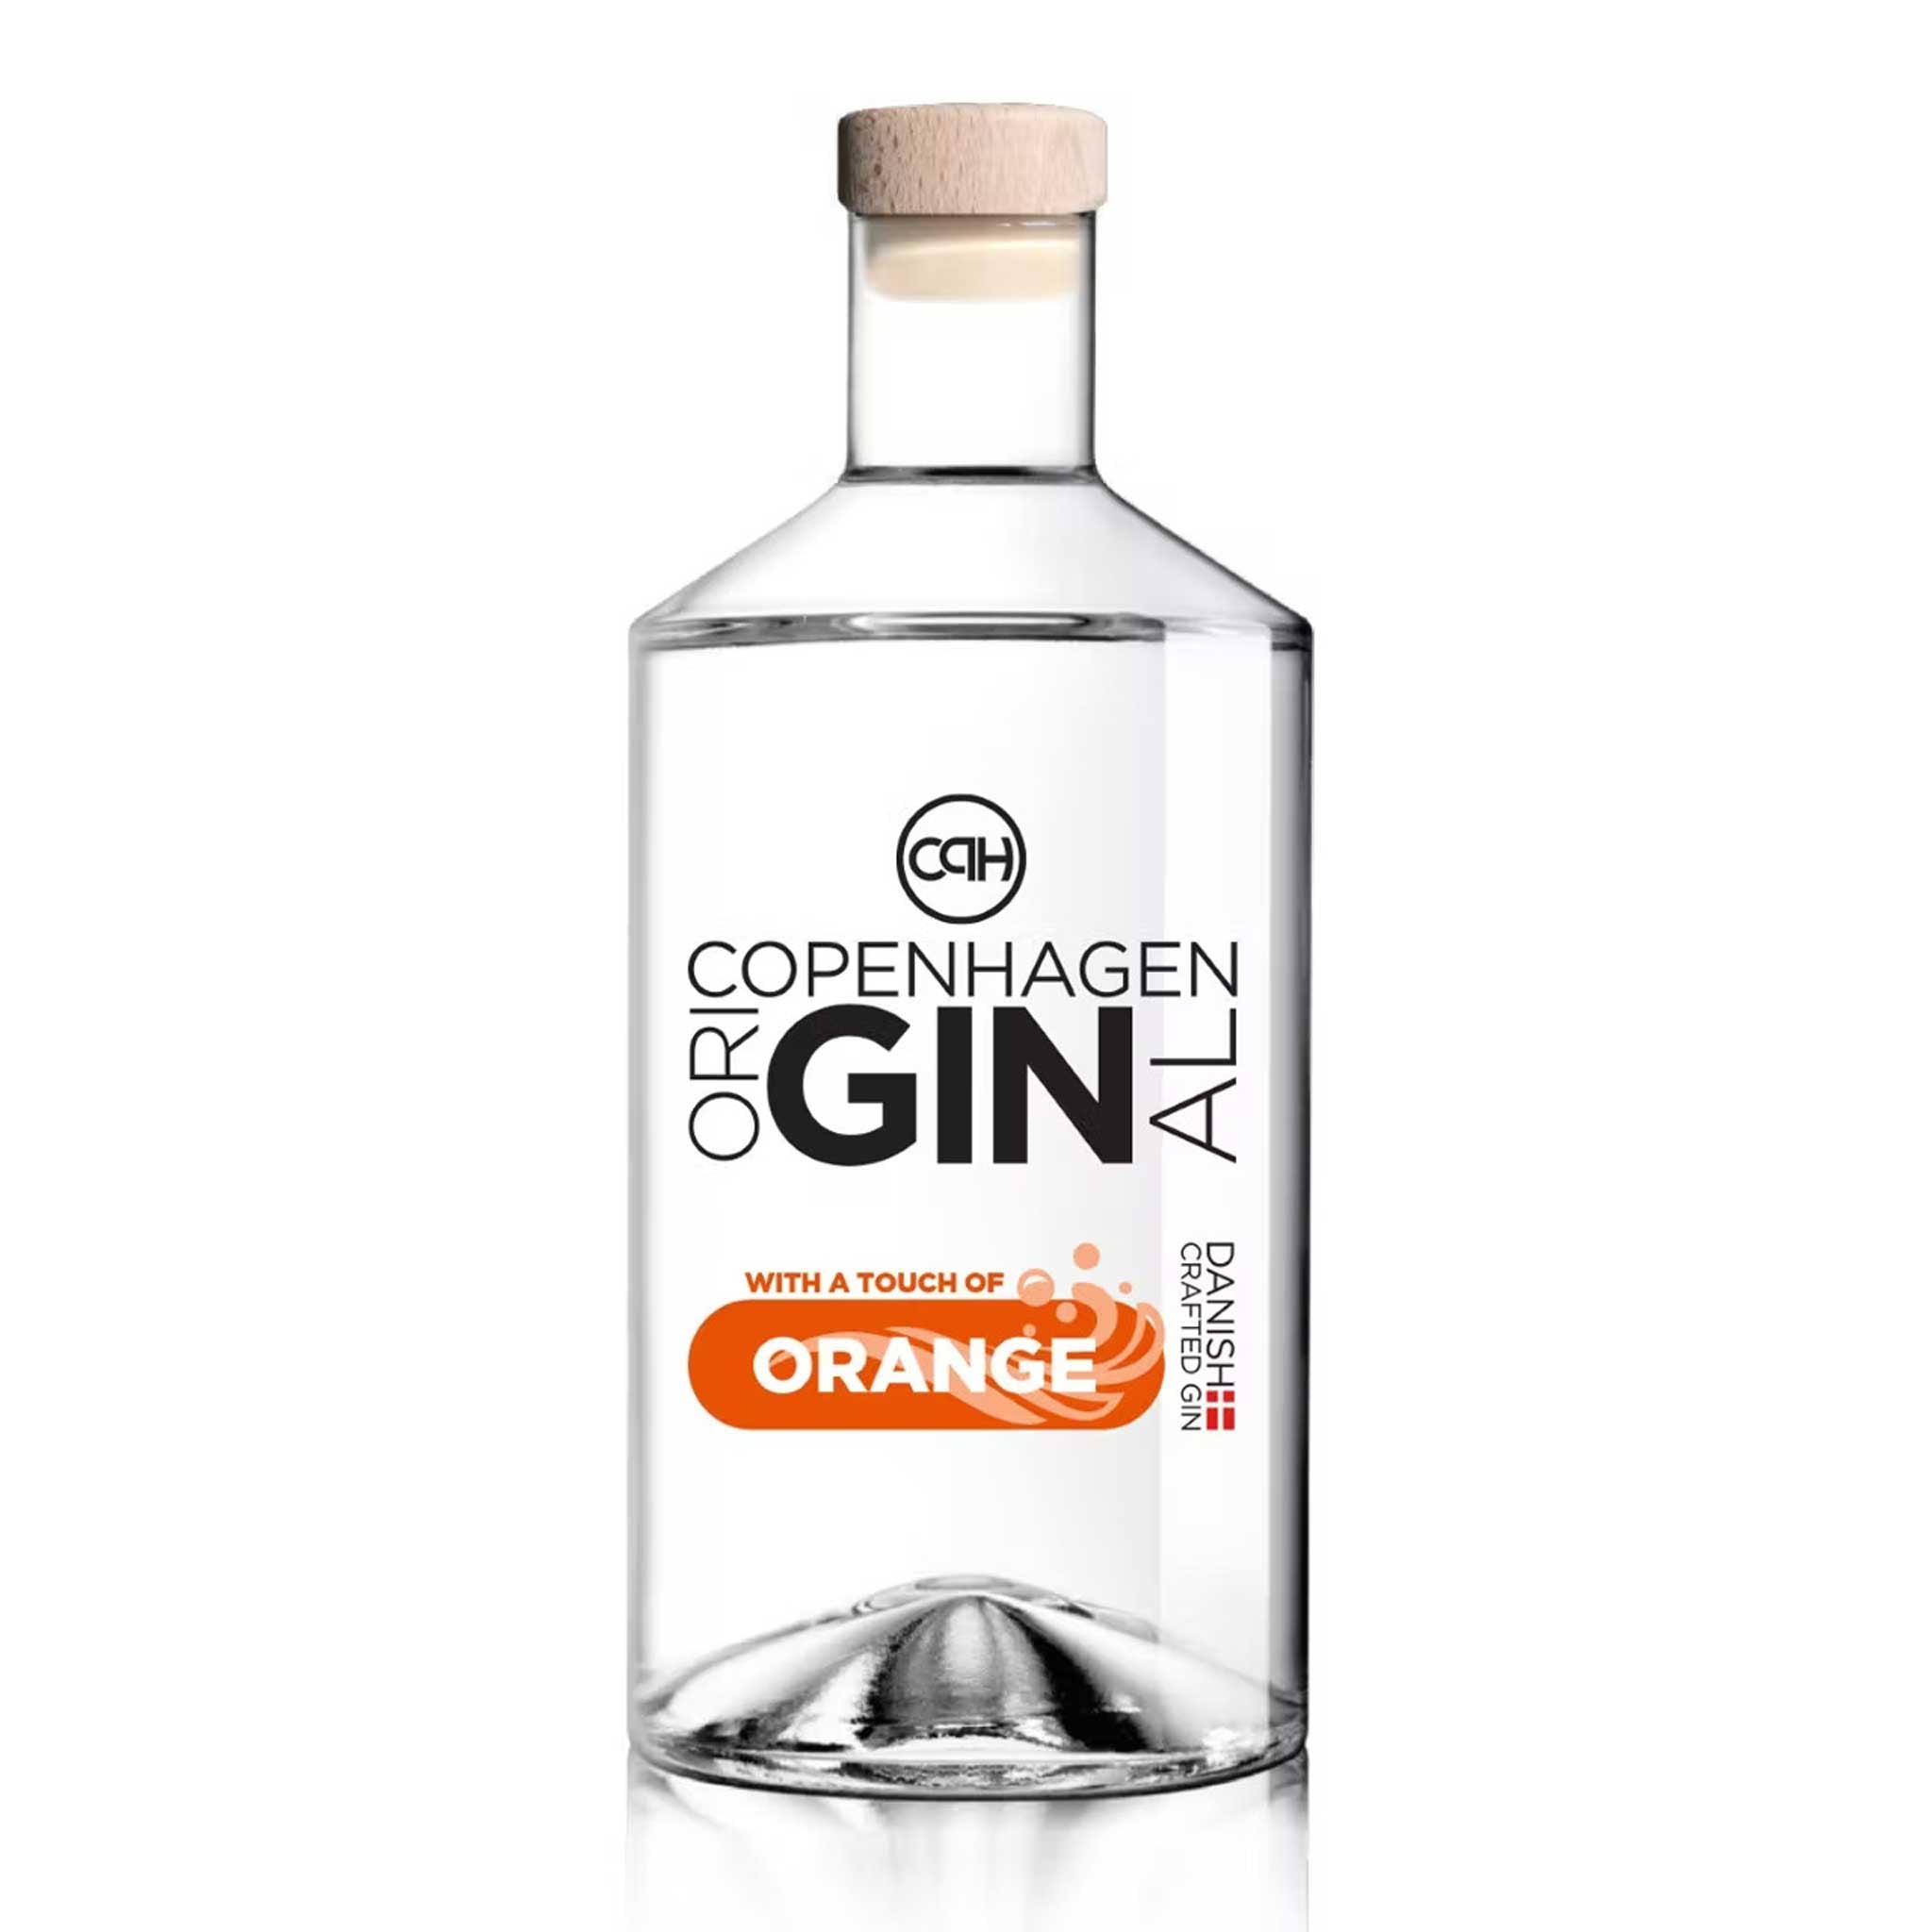 Orange GIN | 700ML | 39%VOL | Copenhagen oriGINal